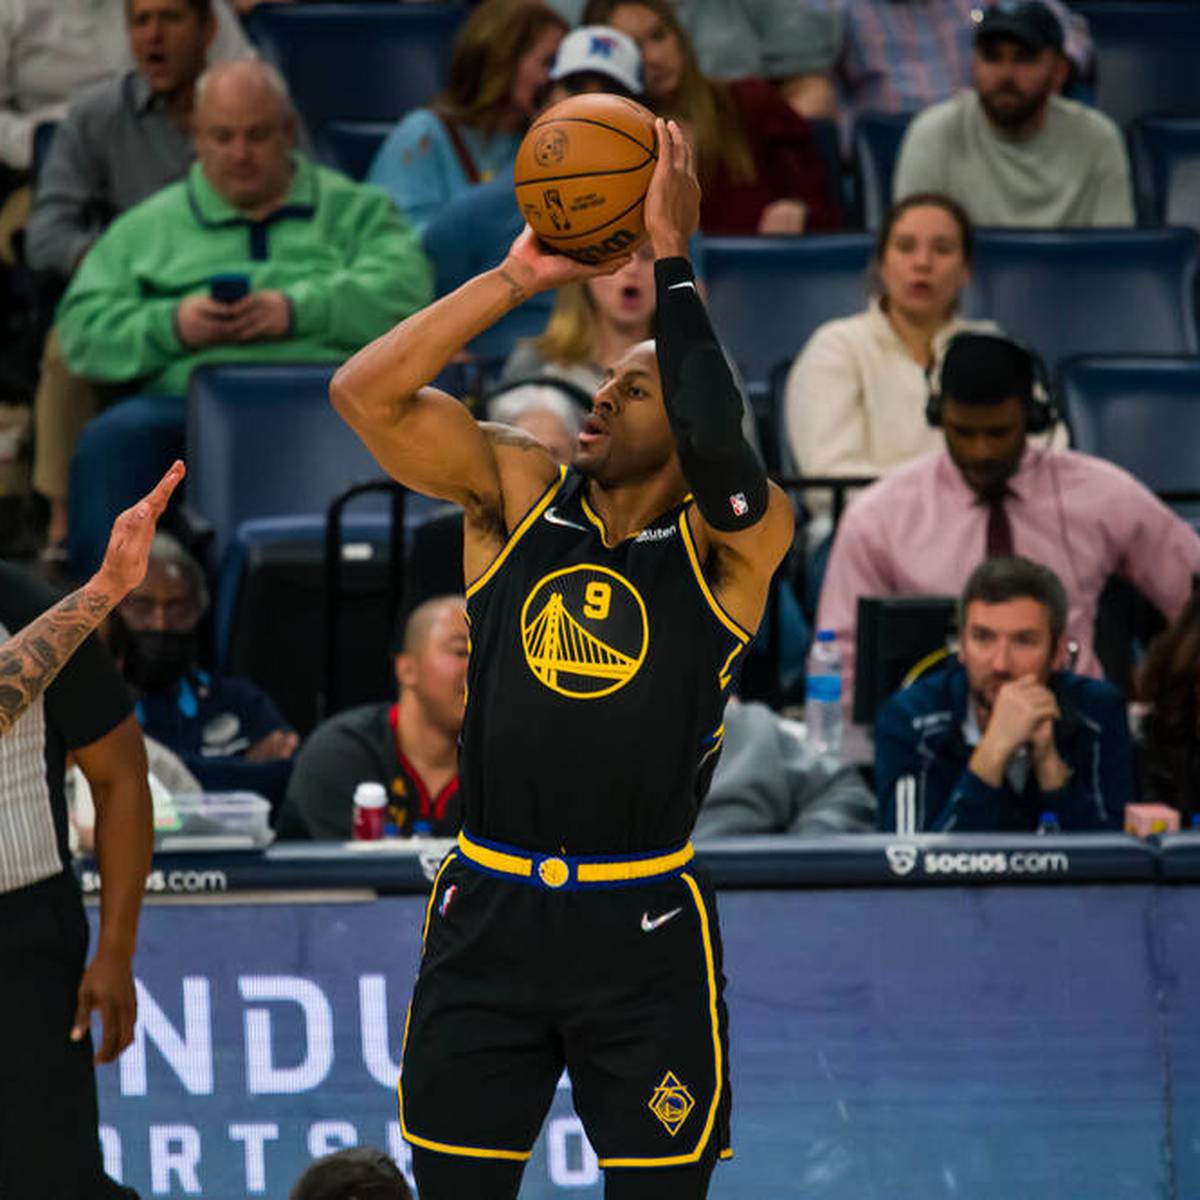 Andre Iguodala kehrt erneut zu den Golden State Warriors zurück. Der ehemalige Finals-MVP geht damit in seine 19. und auch letzte NBA-Saison.